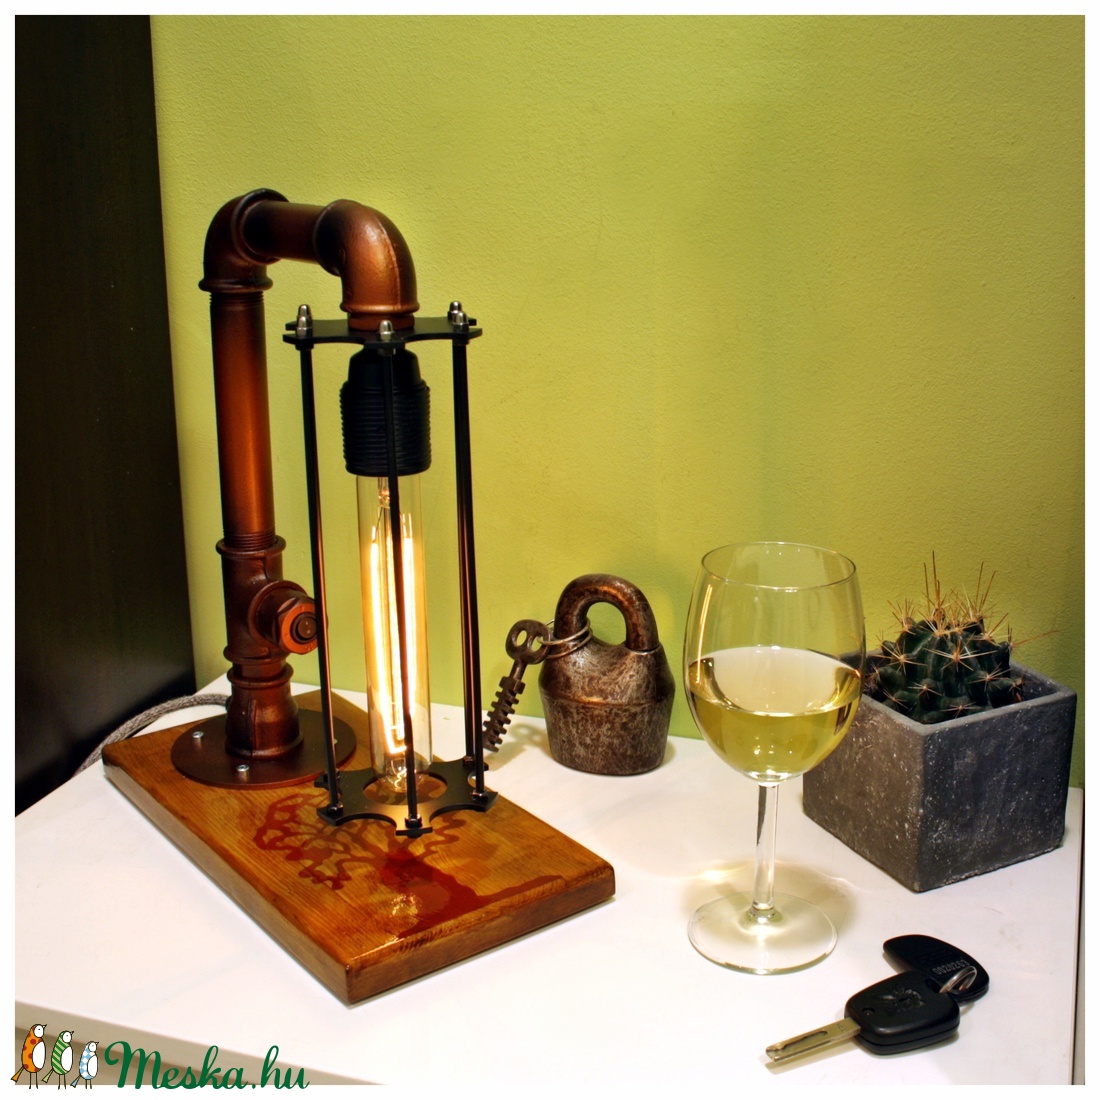 Asztali steampunk hangulatlámpa réz színű csövekből, fa motívummal -  - Meska.hu